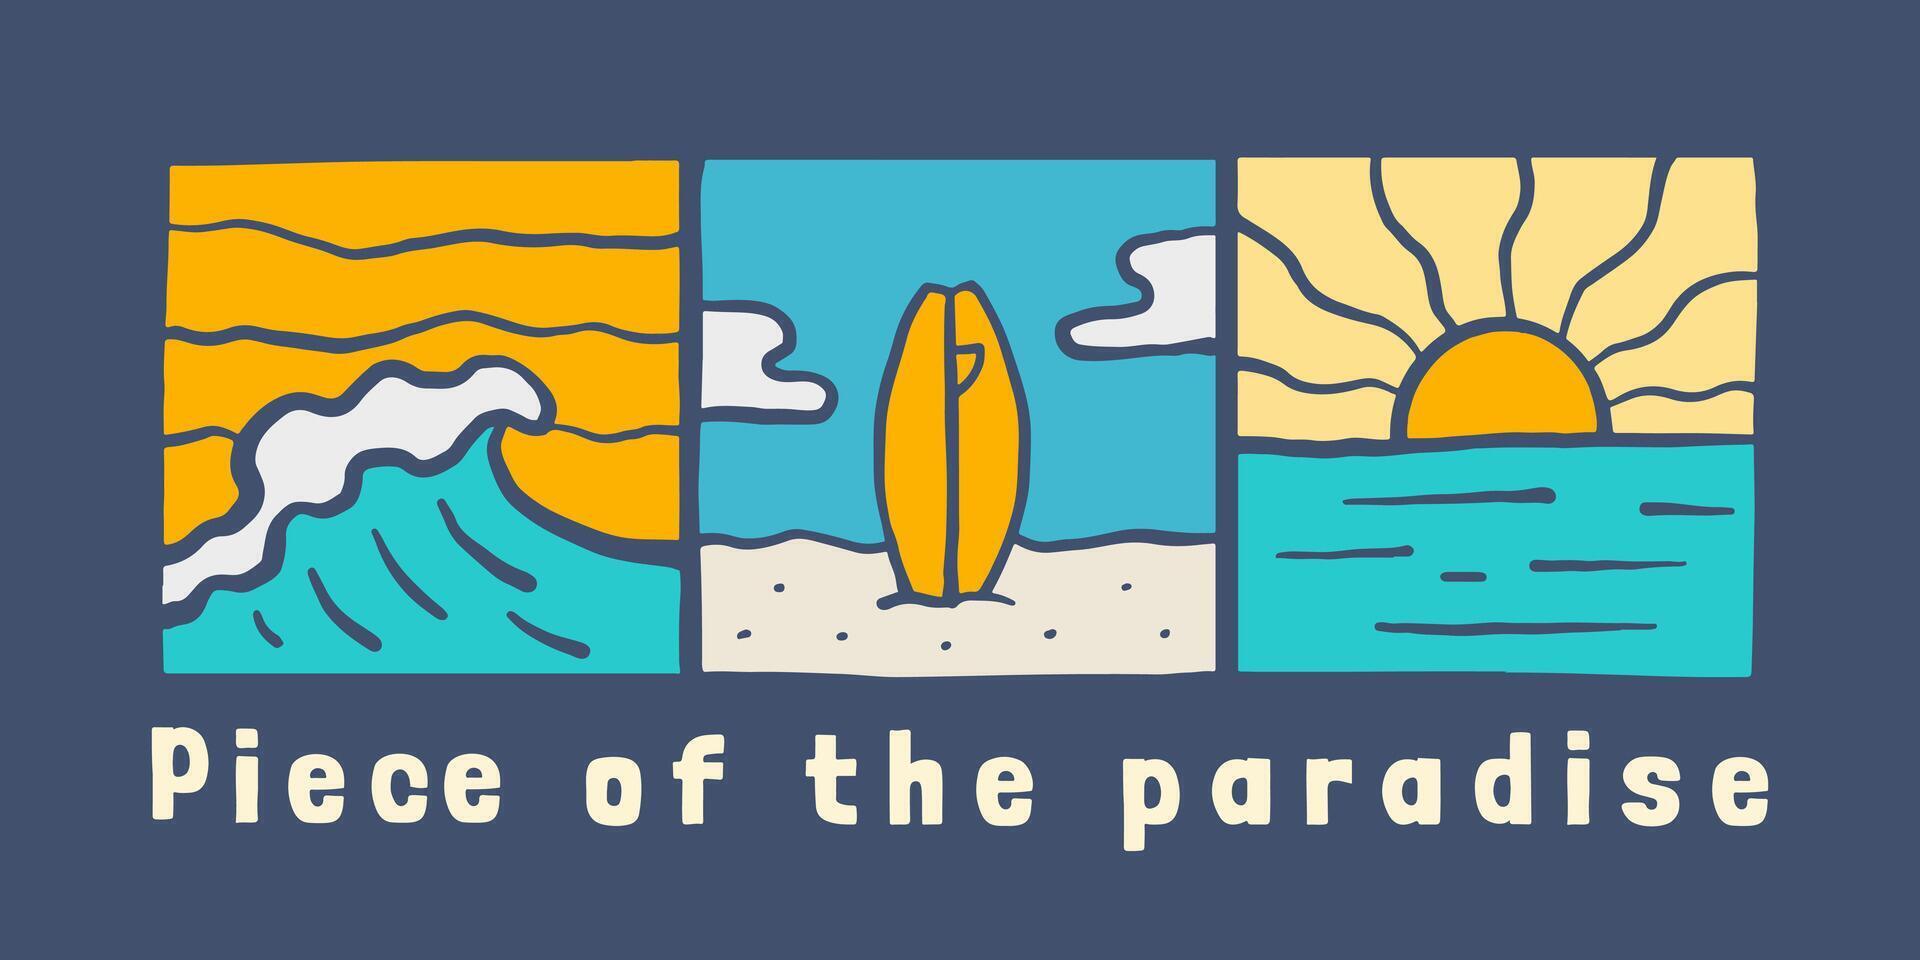 de stuk van de paradijs, surfing tijd in zomer strand, ontwerp voor t shirt, sticker, poster, enz vector